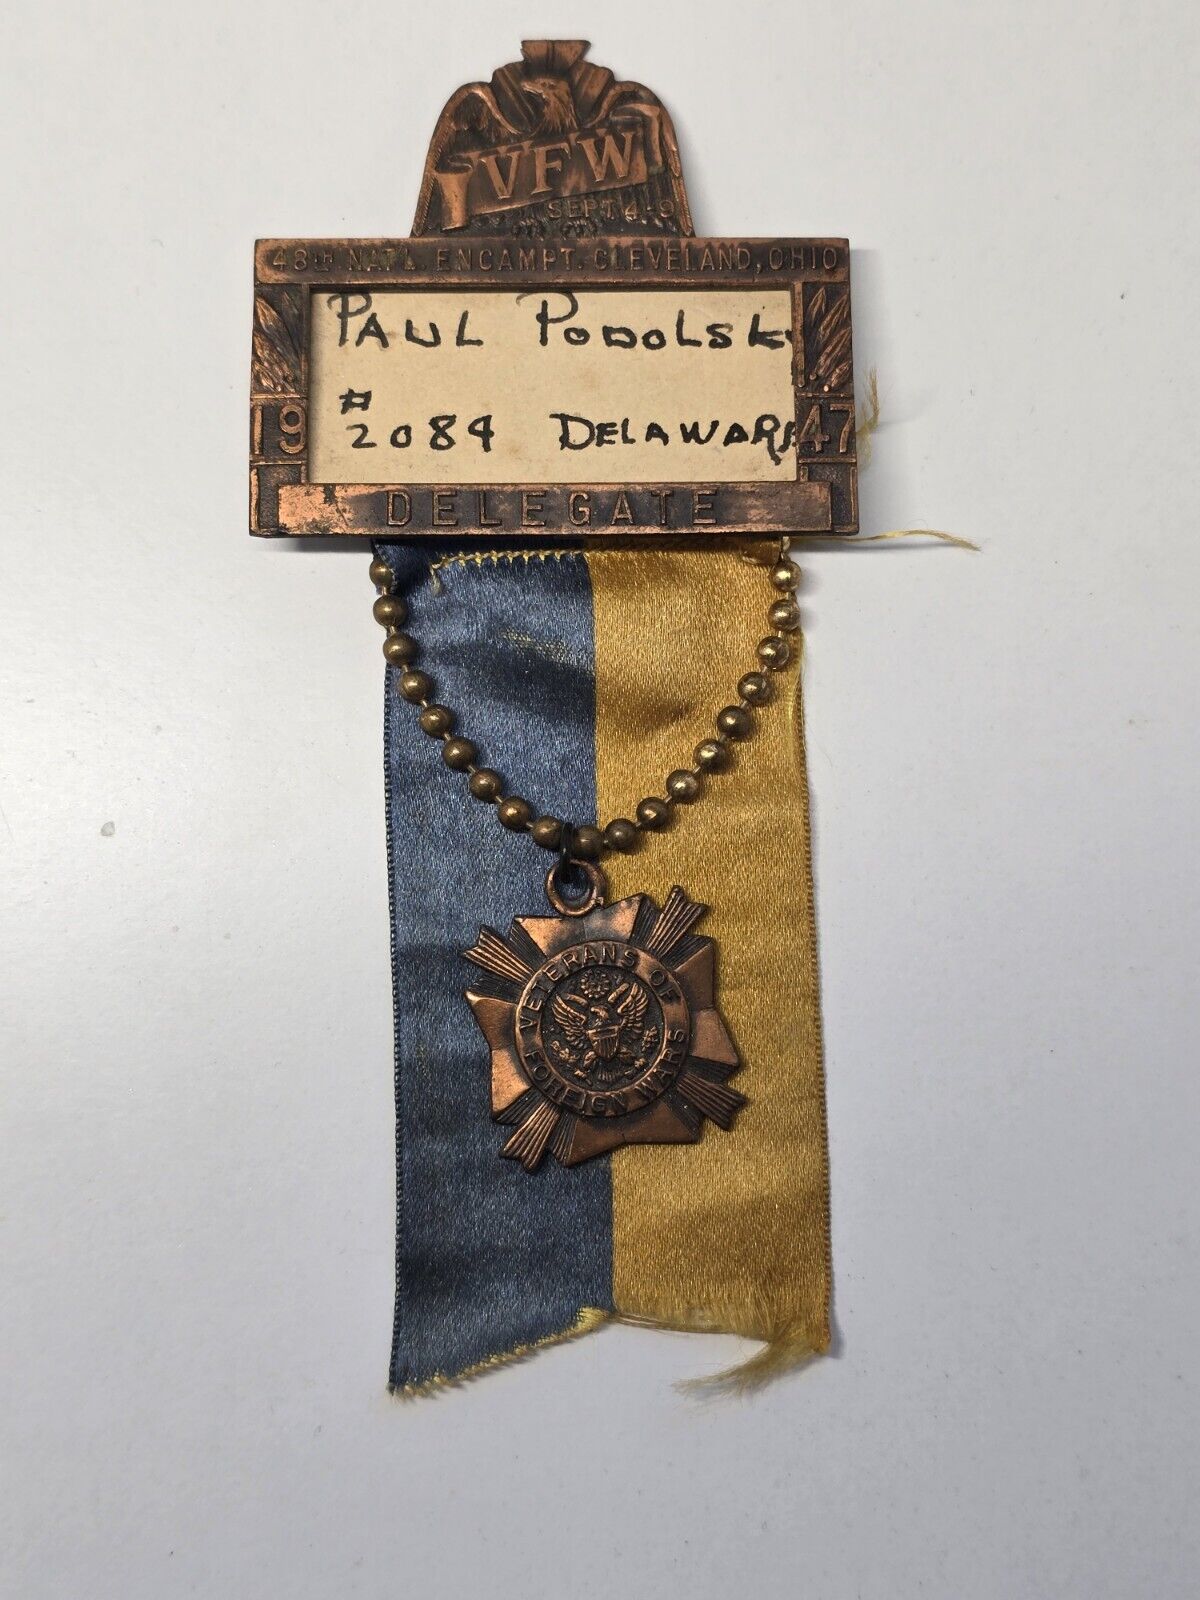 1947 VFW Delegate Medal, 48th National Encampment.  Cleveland, OH